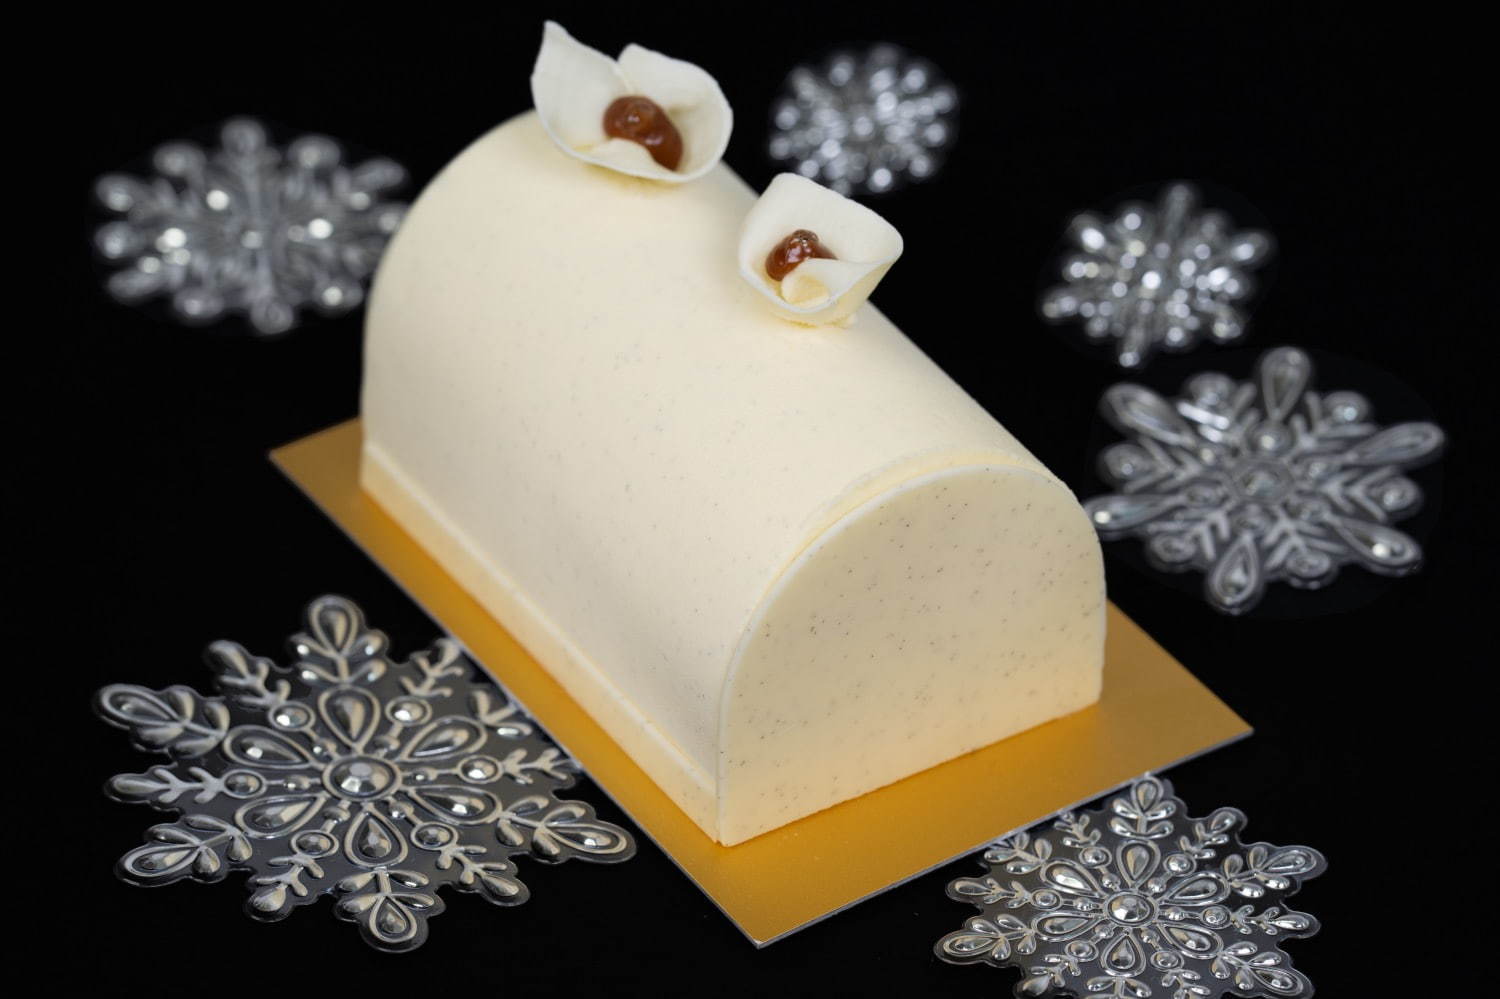 ラデュレのクリスマスケーキ2020、“ブラン・マンジェ”をイメージしたビュッシュ・ド・ノエルなど｜写真2